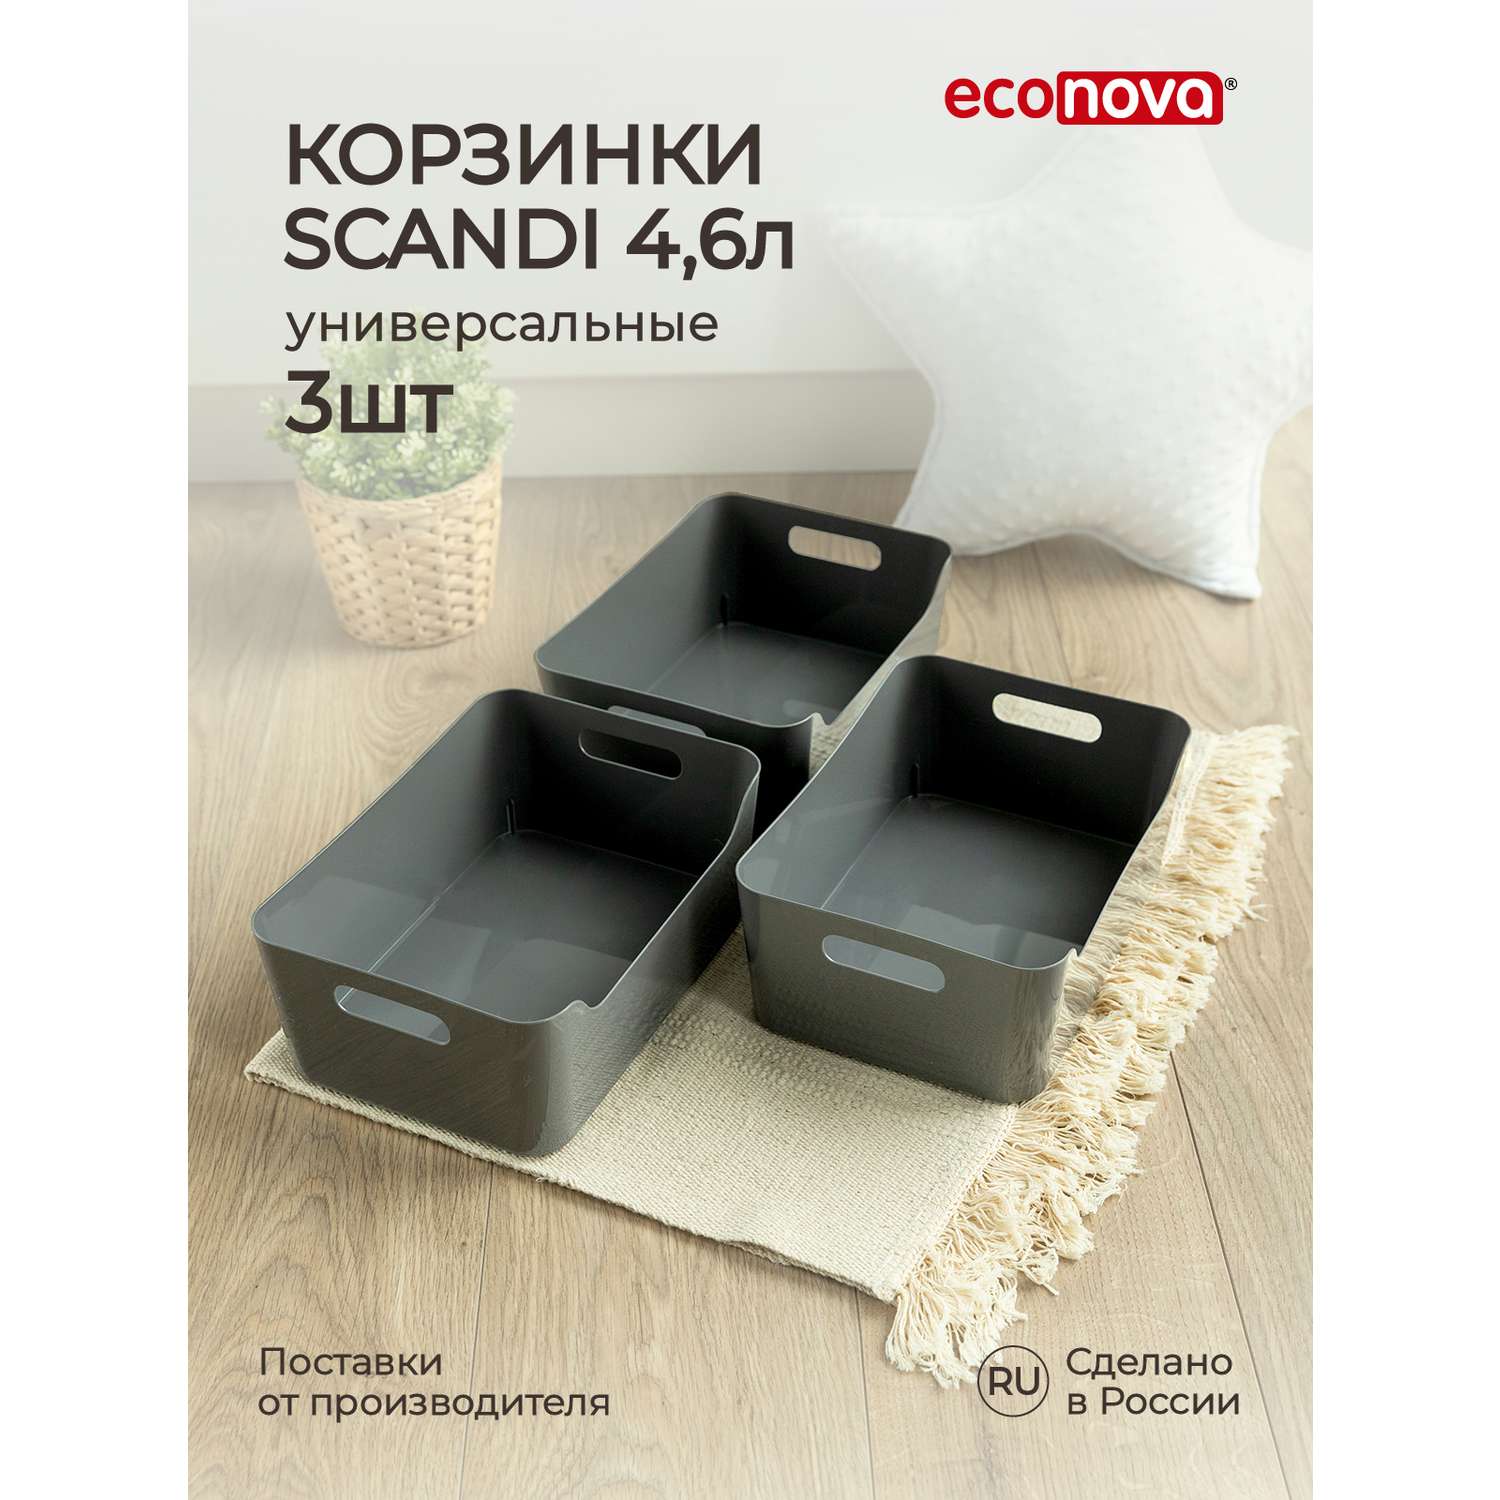 Комплект корзинок Econova универсальных Scandi 270x190x105 мм 4.6л 3шт cерый - фото 1